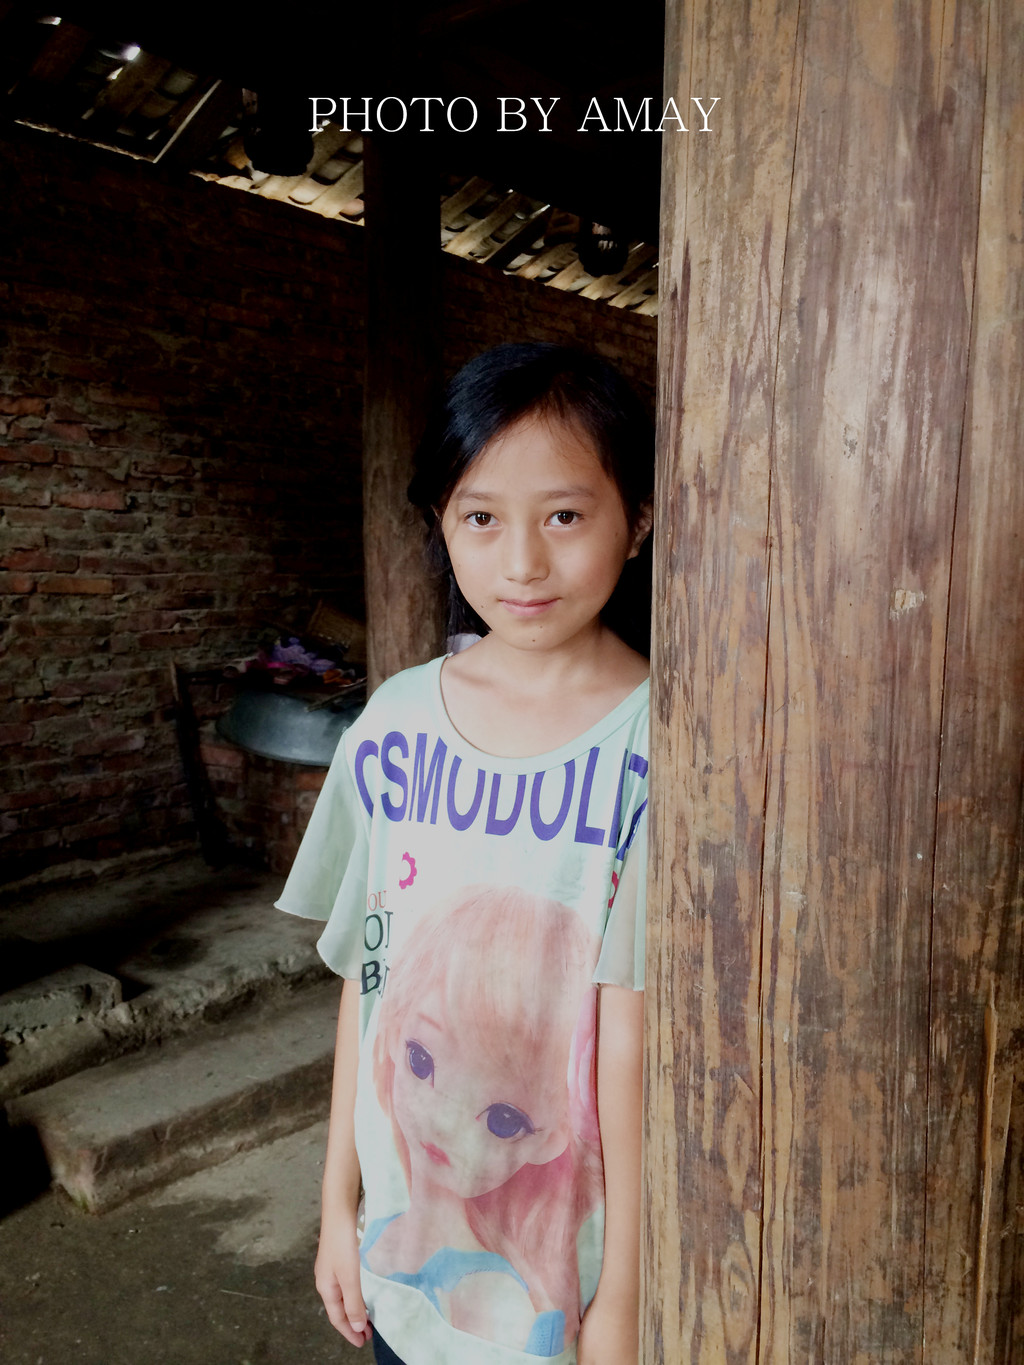 在村里遇到这个小女孩,我说你好漂亮,可能给你拍张照片吗,她同意了.